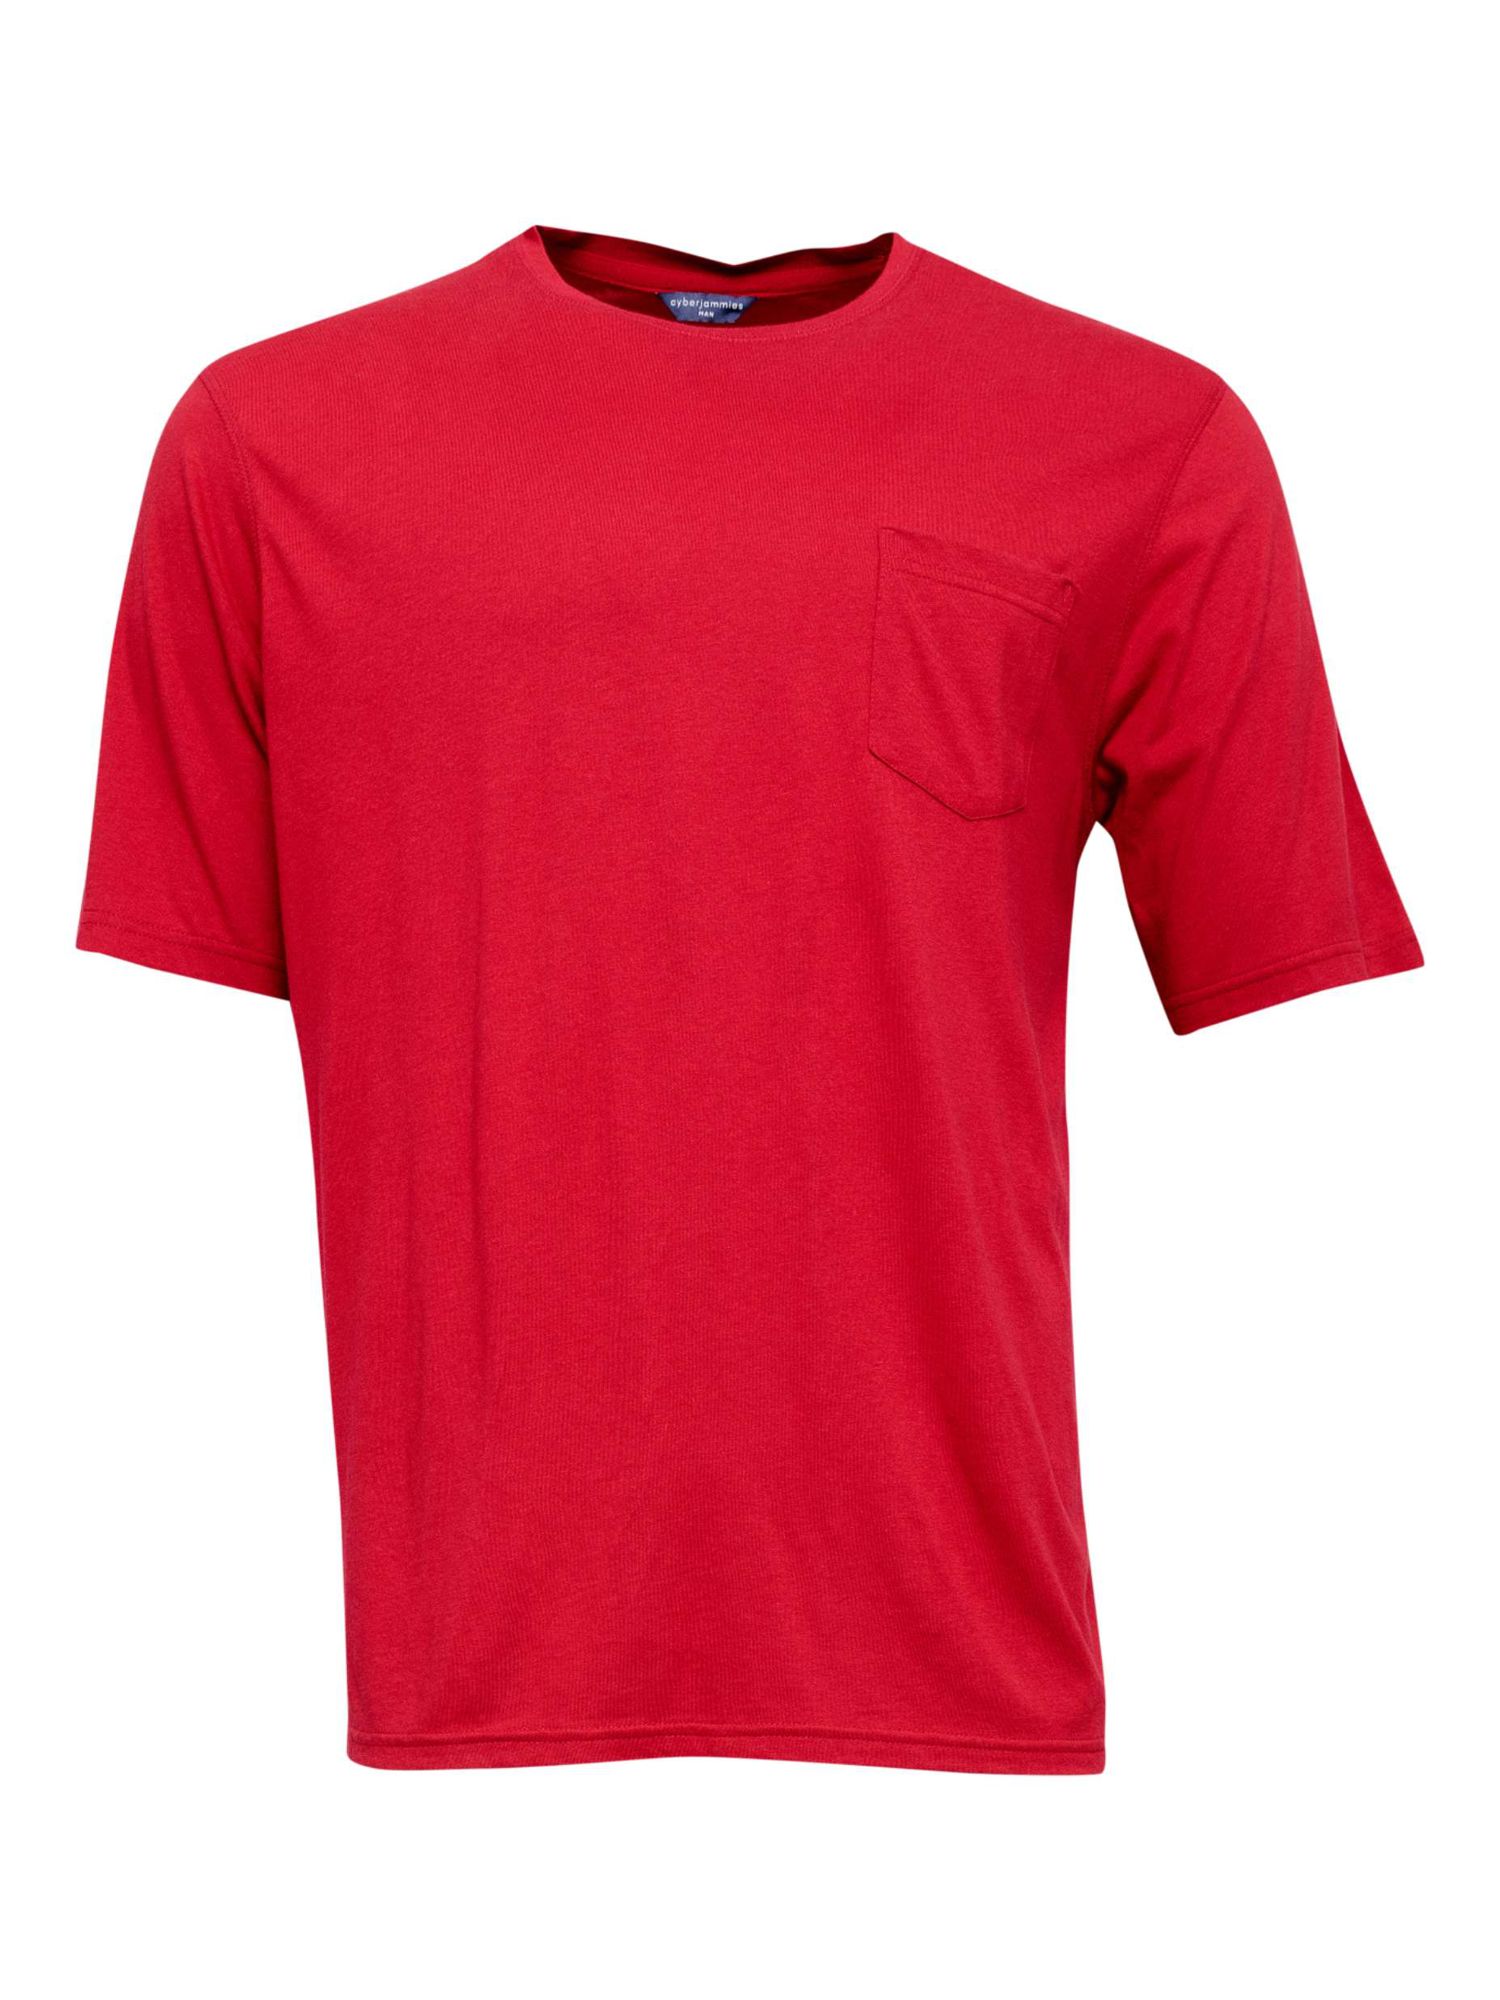 Buy Cyberjammies Whistler Short Sleeve Pocket Pyjama Top, Red Online at johnlewis.com